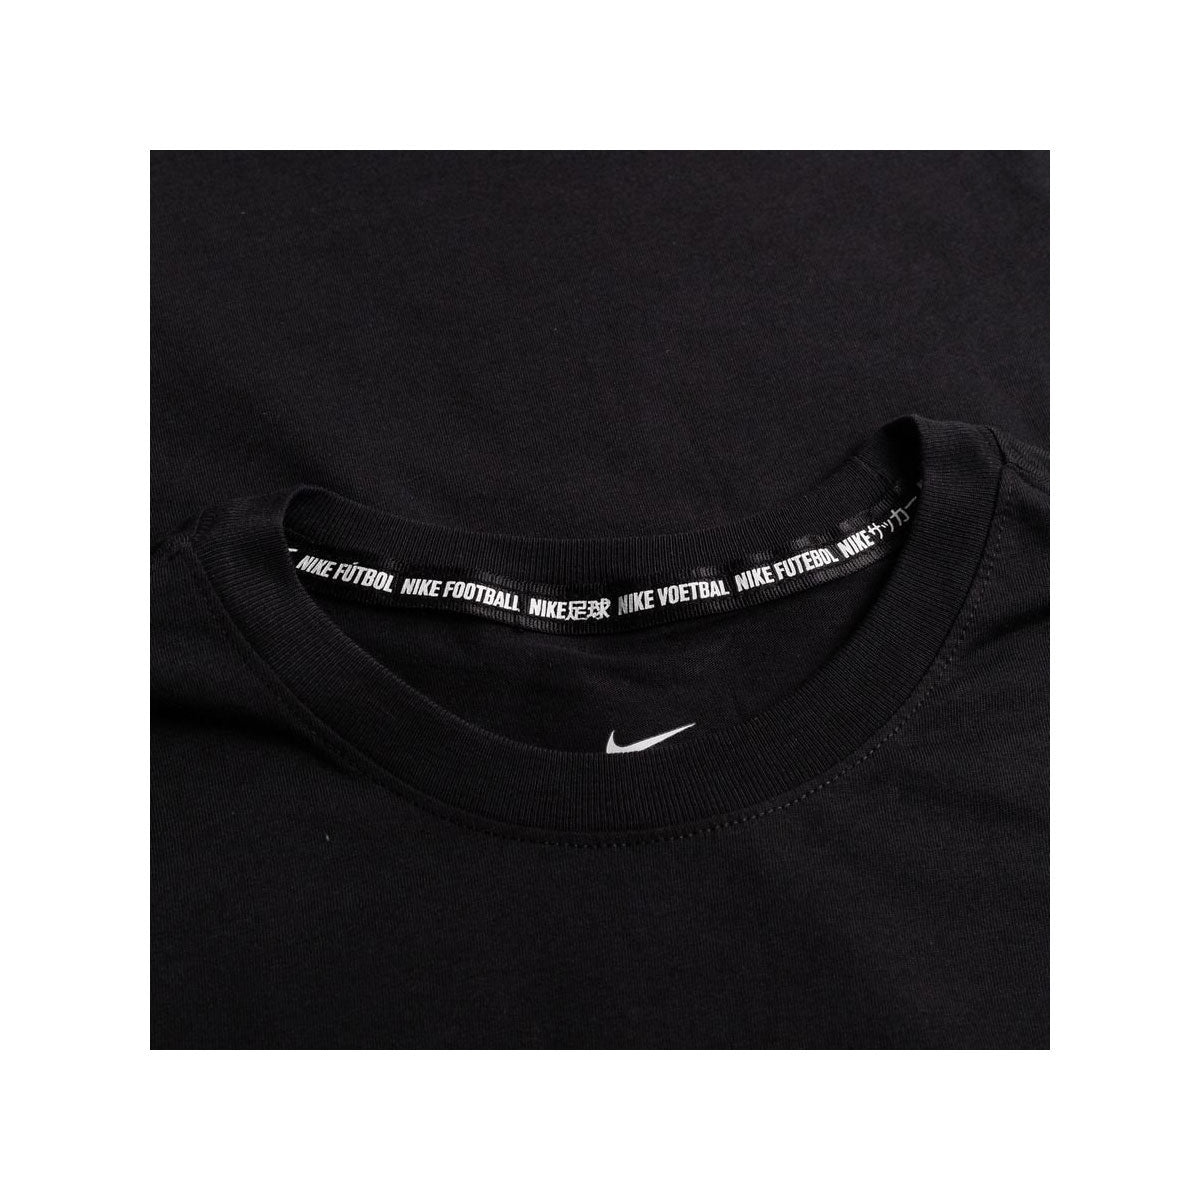 Nike Men's FC SE11 Football T-Shirt